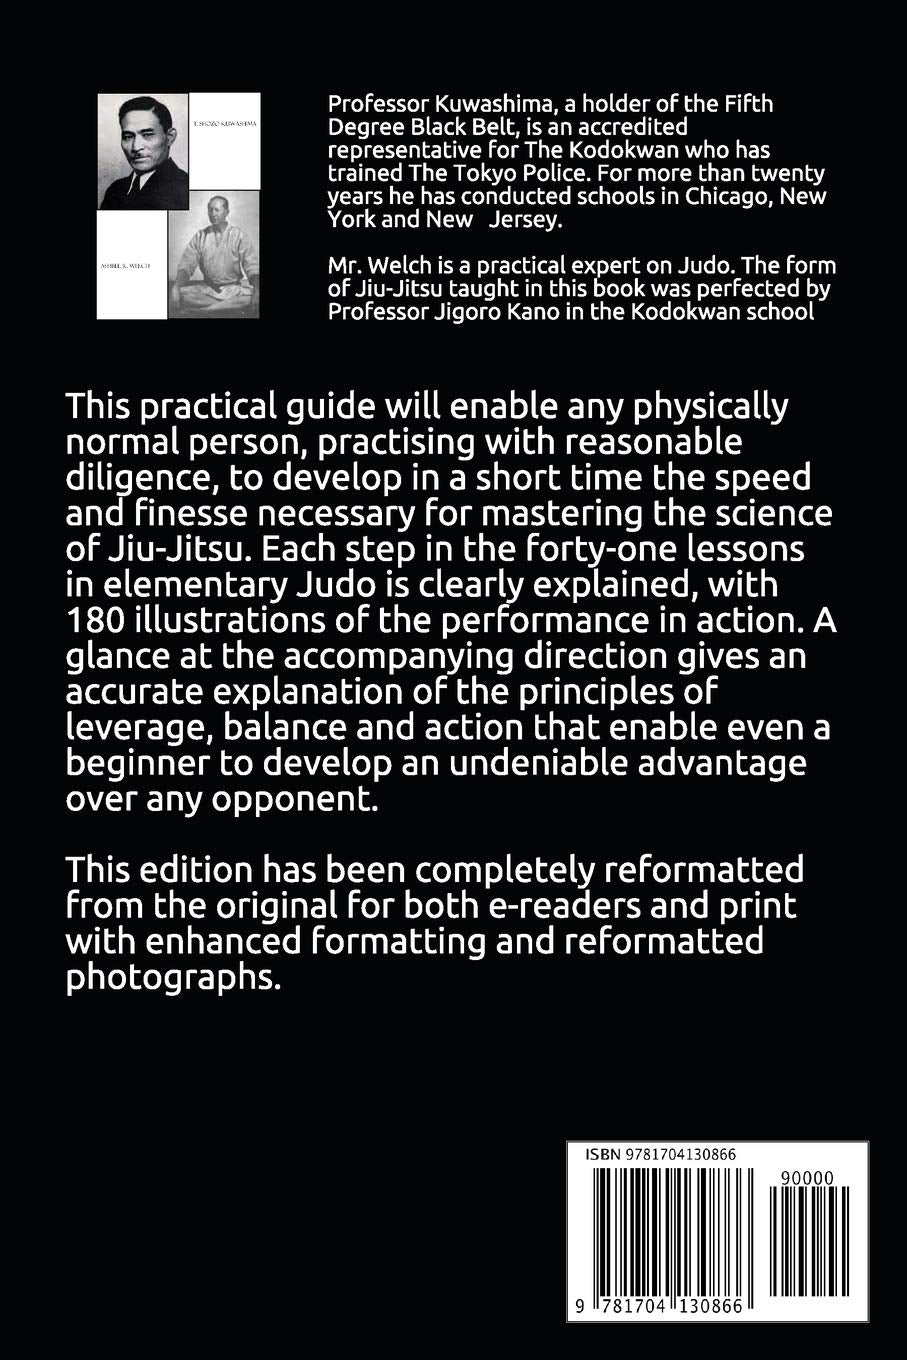 Libro de 41 lecciones de judo en la ciencia moderna del Jiu-Jitsu de Shozo Kuwashima (reimpresión) 